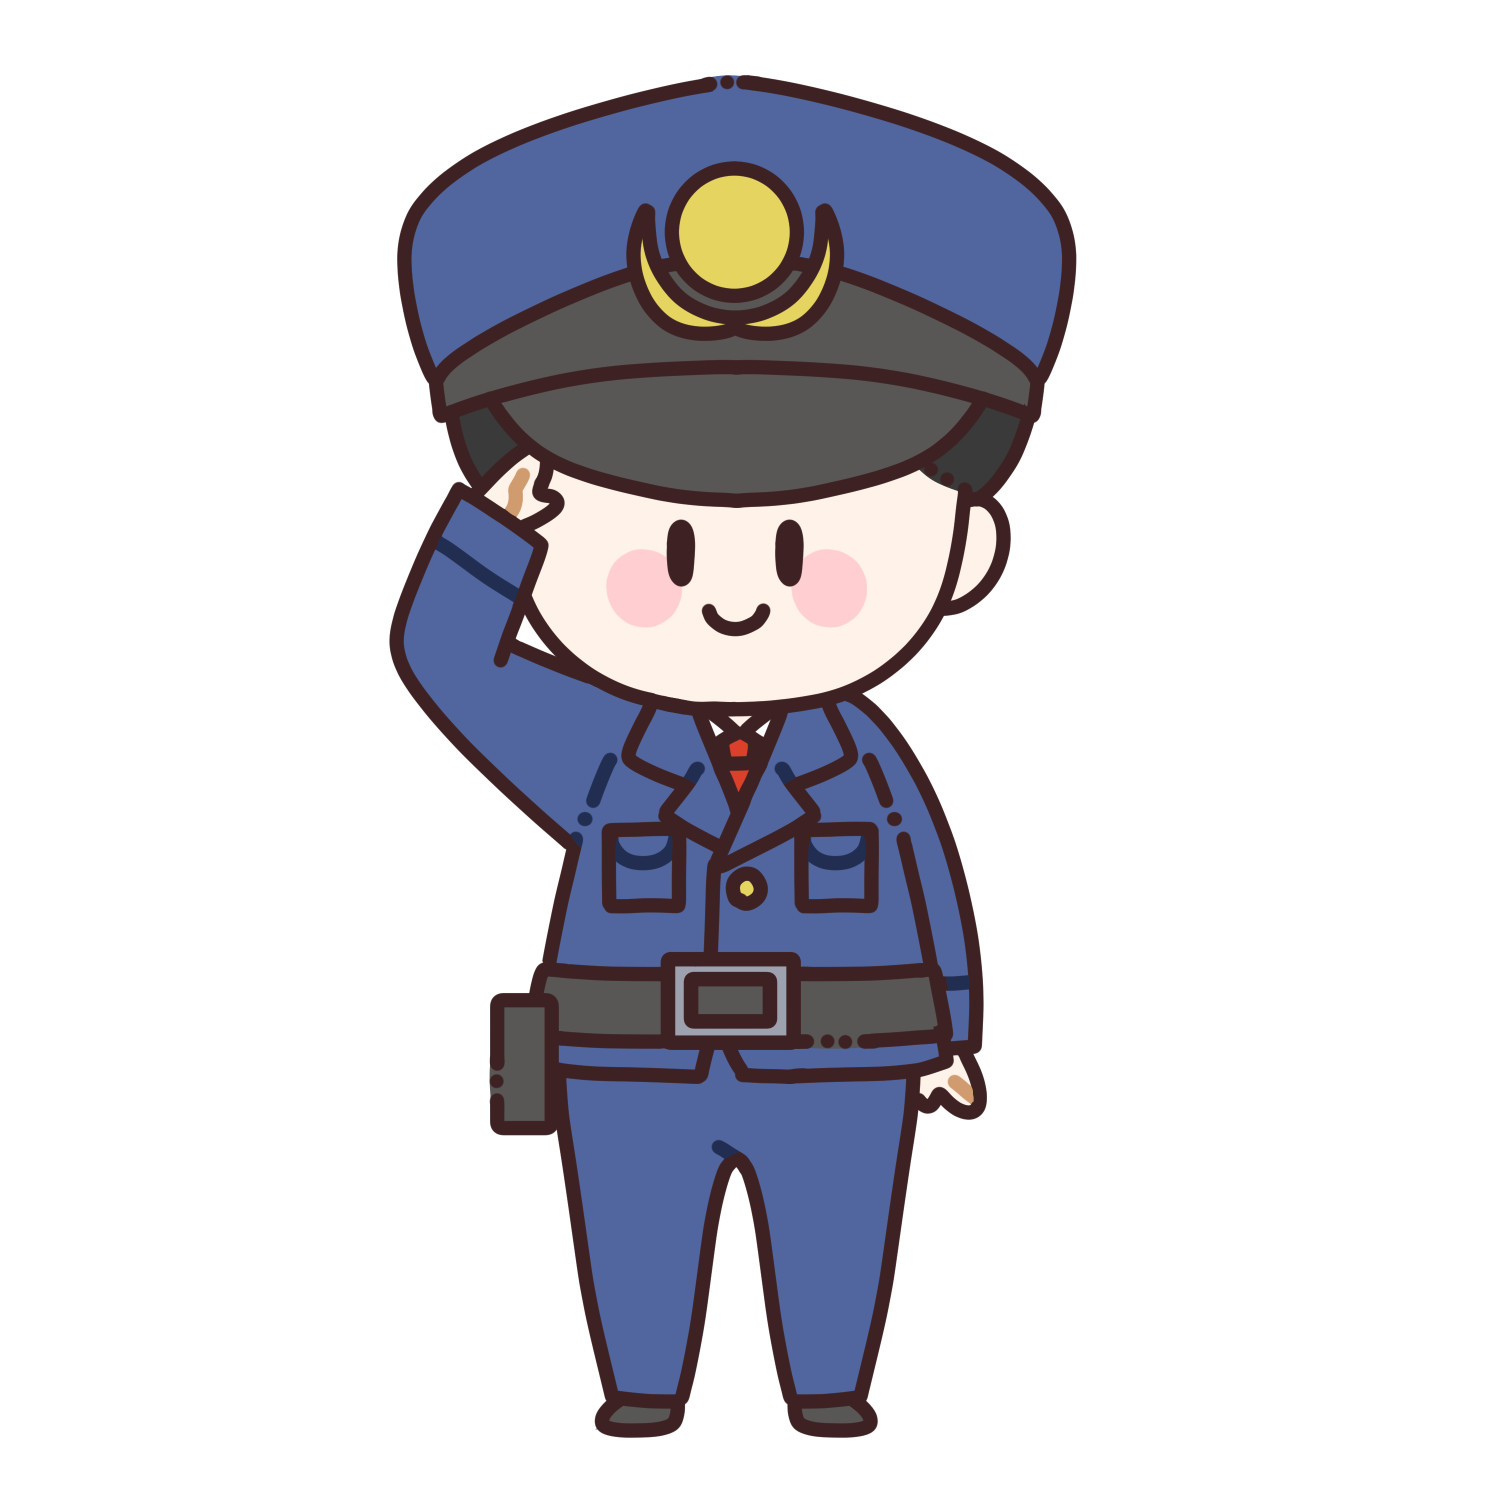 敬礼する男性警察官のイラスト